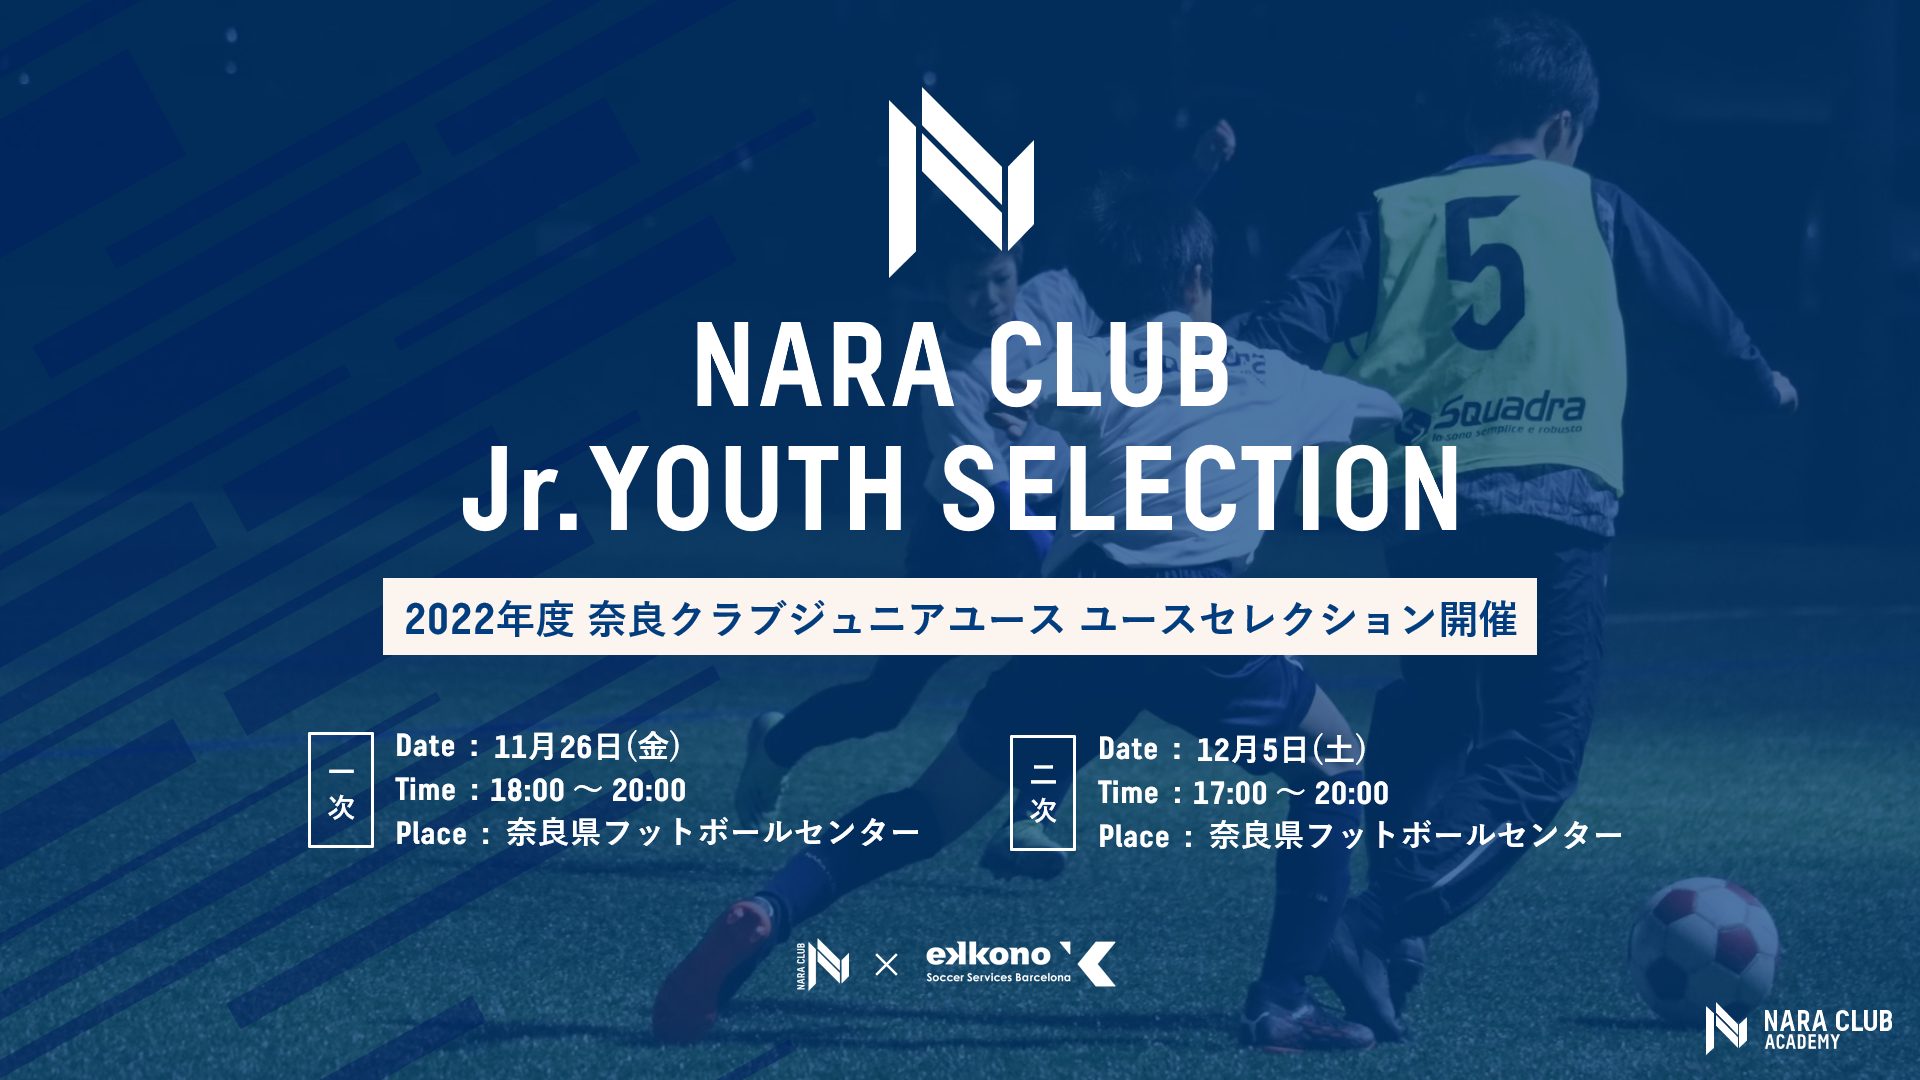 22年度 奈良クラブジュニアユース セレクション開催のお知らせ 奈良クラブ Nara Club Official Site